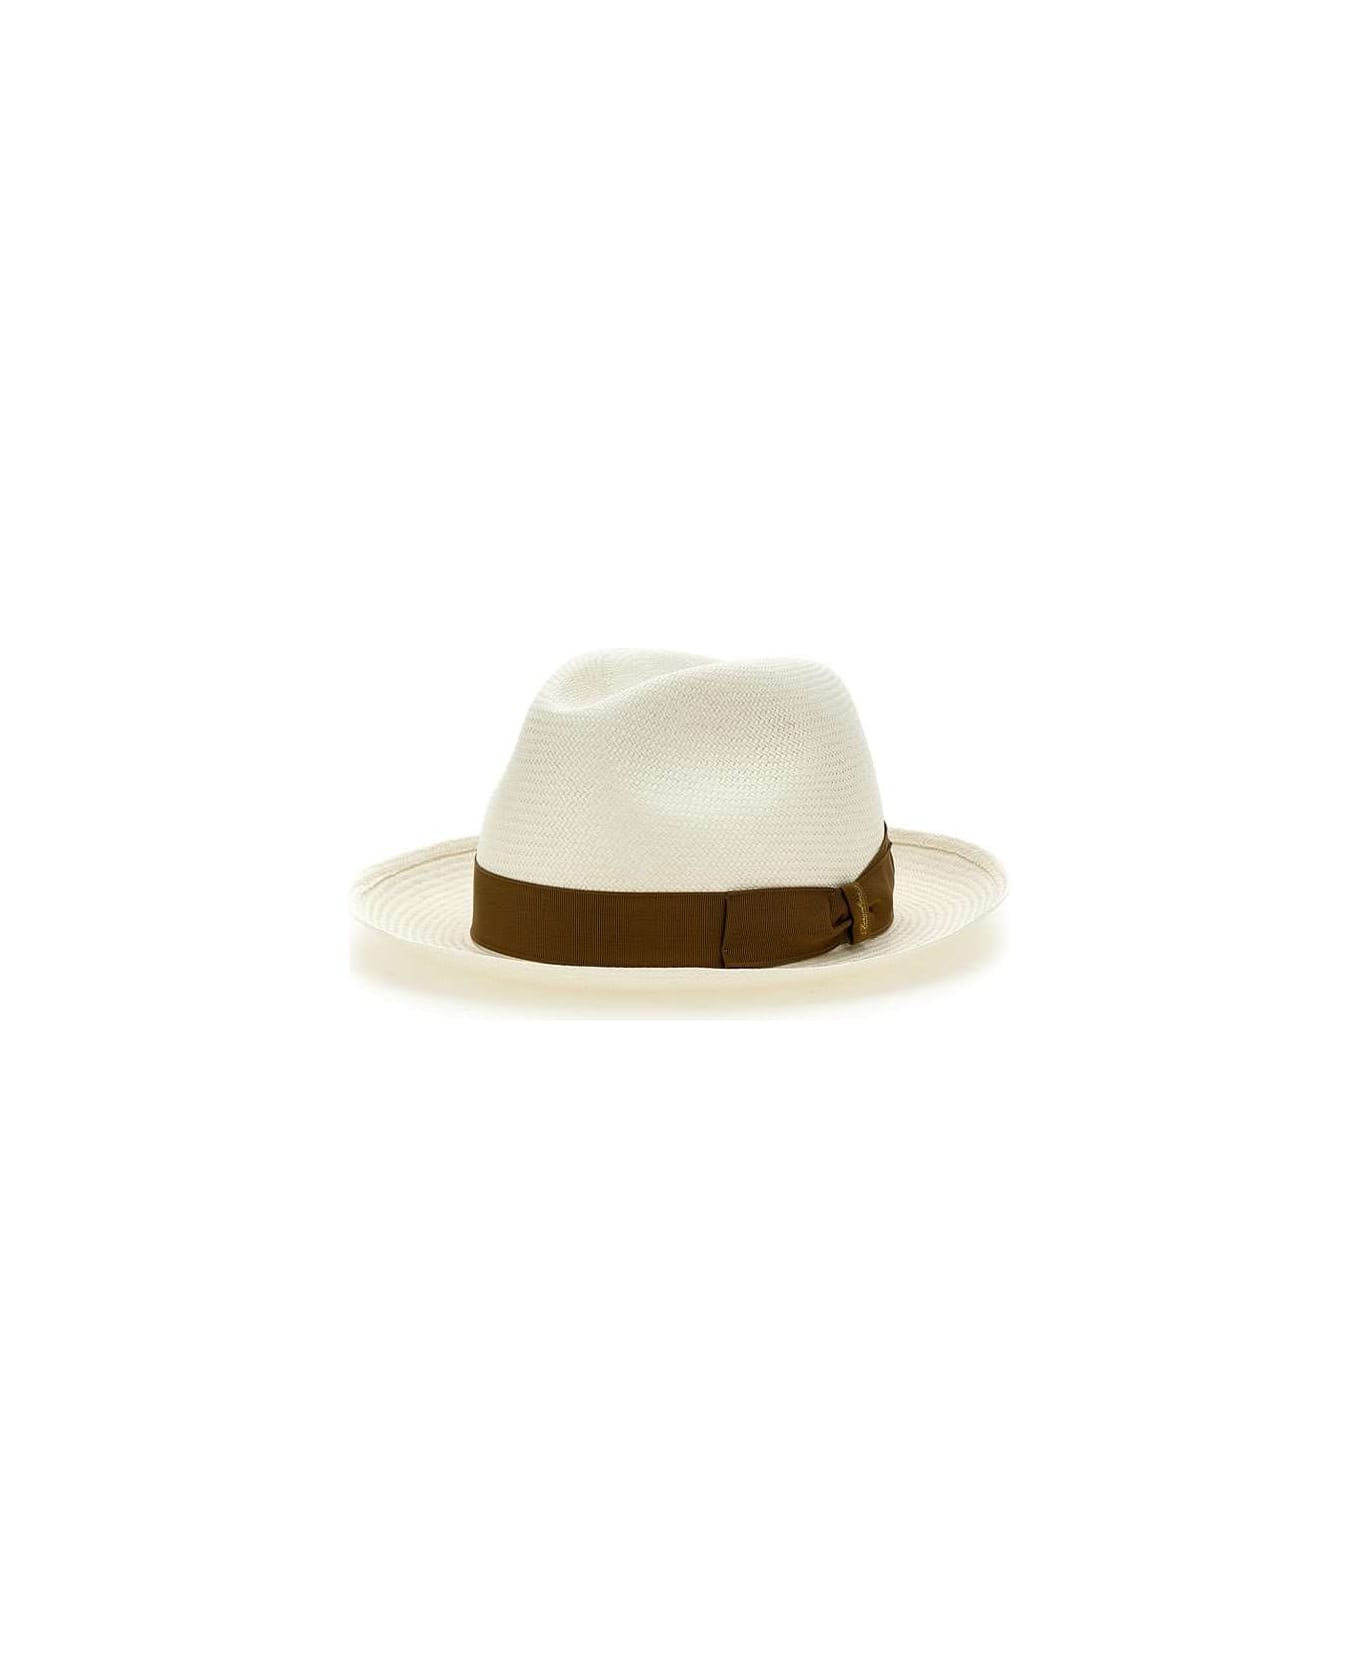 Borsalino "panama" Straw Hat - WHITE 帽子